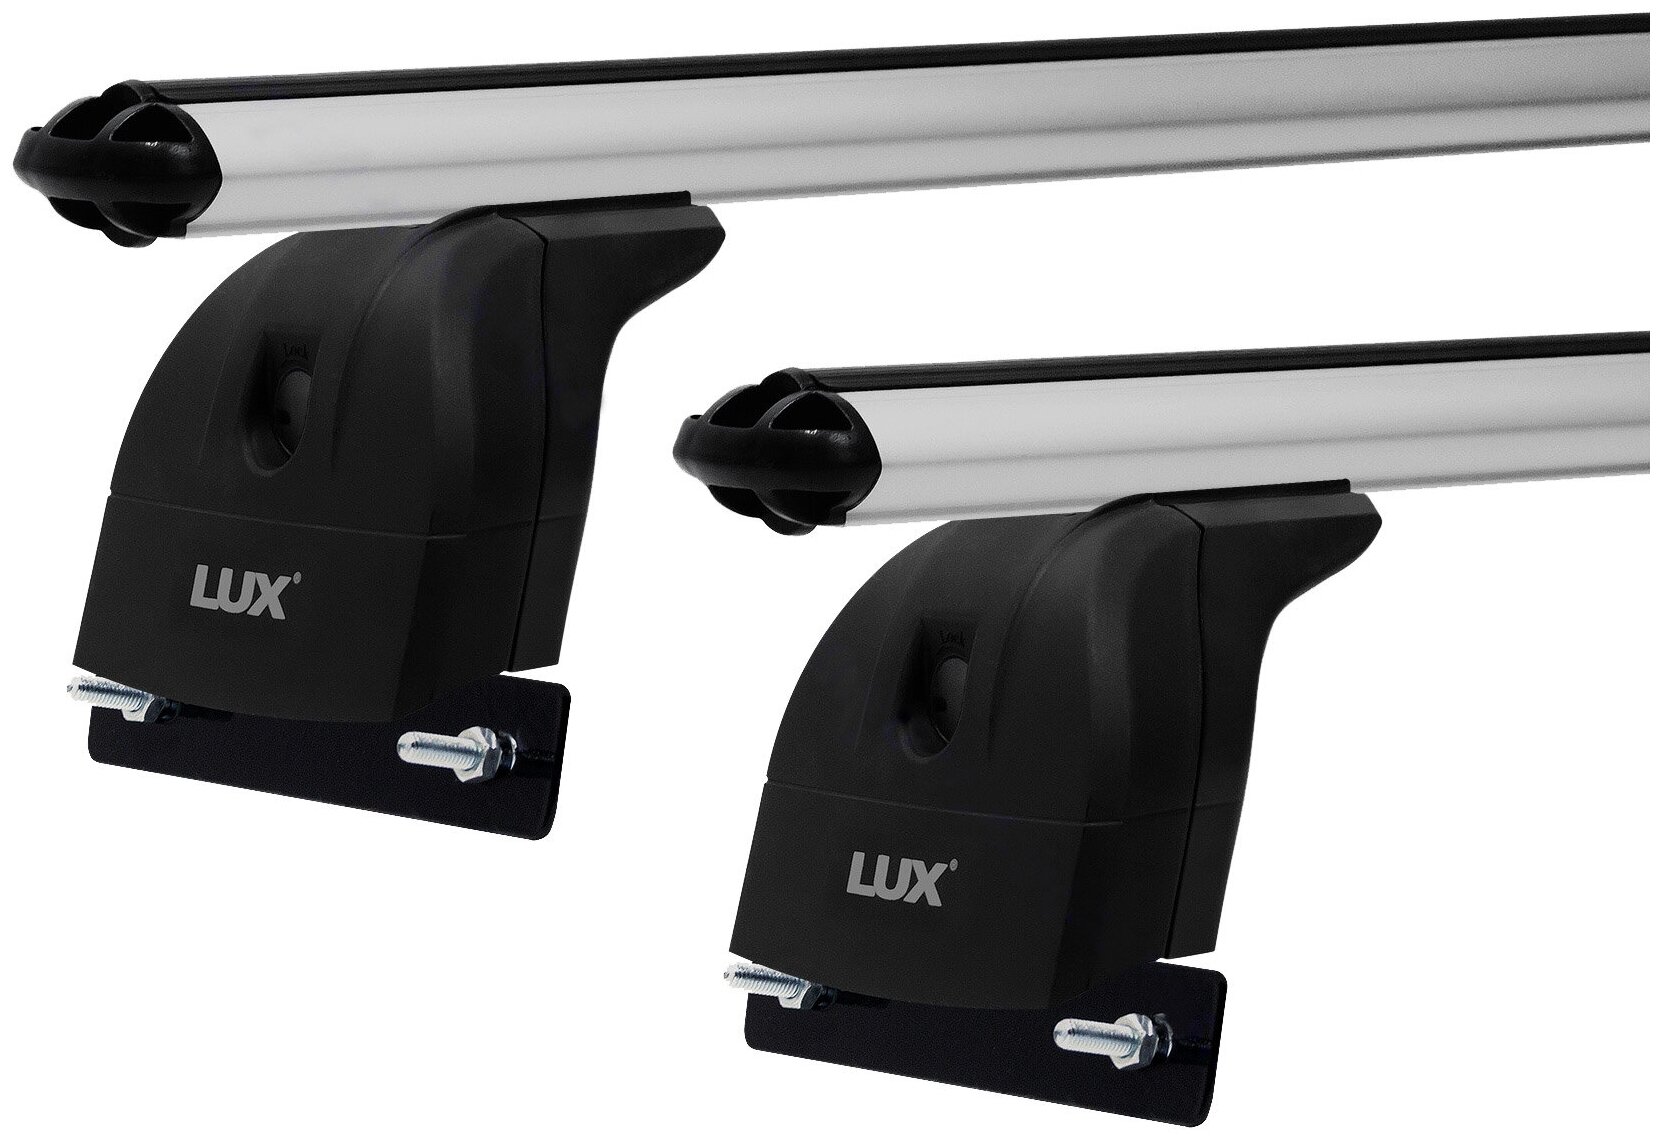 Багажная система "LUX" с дугами 1,2м аэро-классик (53мм) для а/м Honda CR-V IV-V 2012-. г. в.